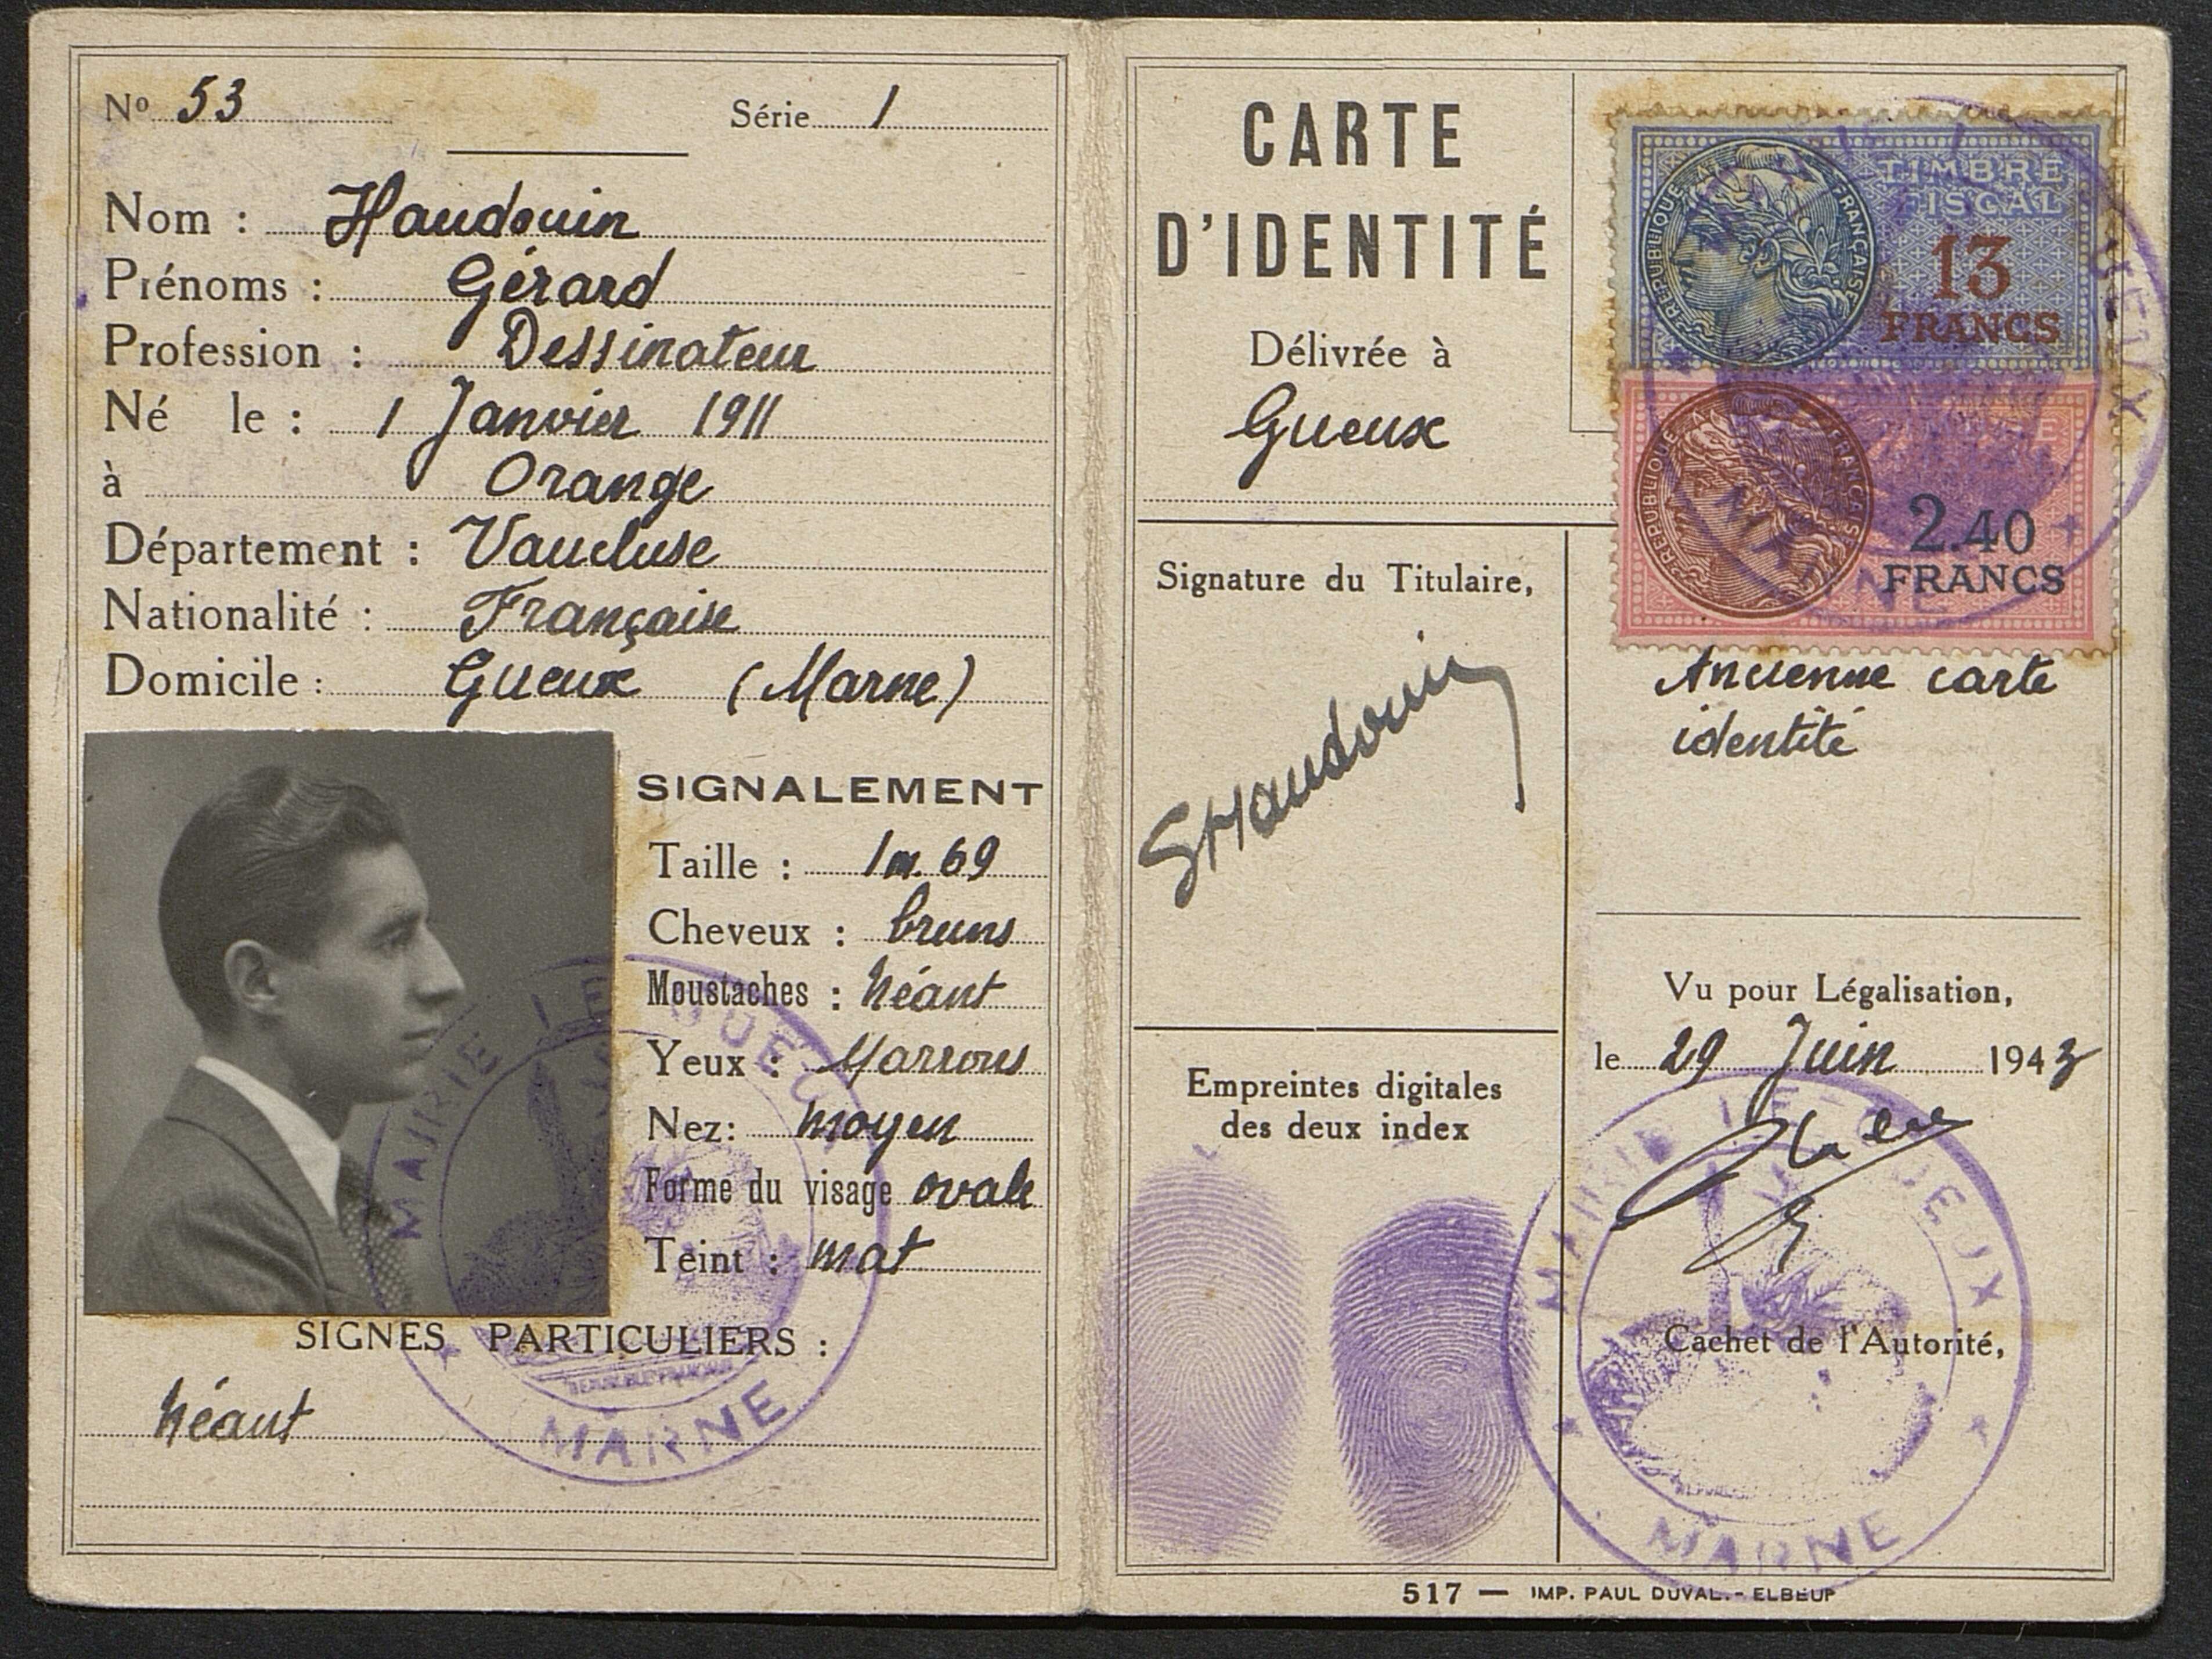 Fausse carte d'identité d'un résistant, datée du 29 juin 1943 : elle comporte son état civil, son signalement, sa photographie, ses emreintes digitales et un tampon "officiel"